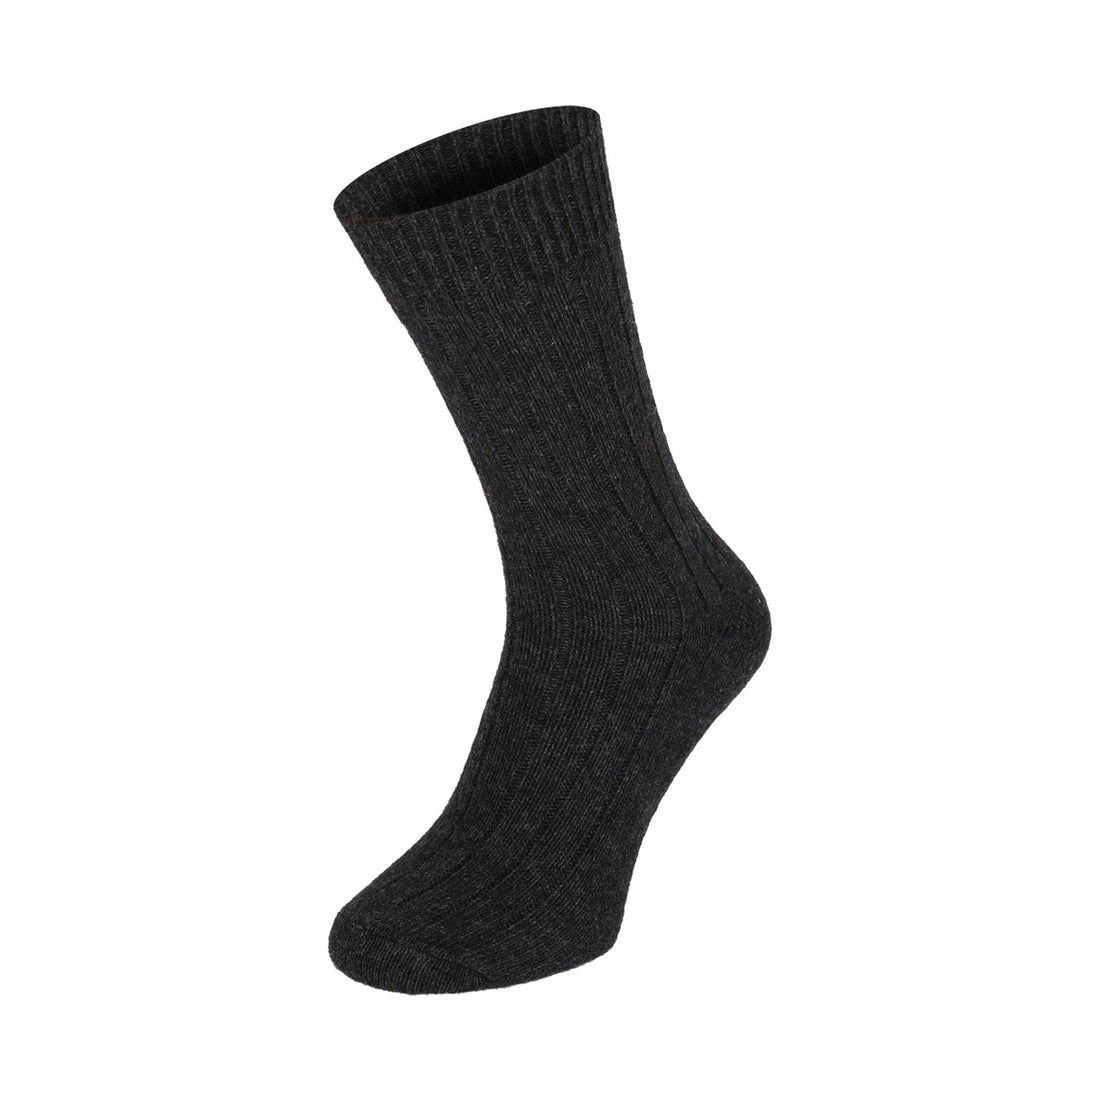 ChiliLifestyle Socken Winter Alpaka Wolle Damen Herren Warm 4 Paar